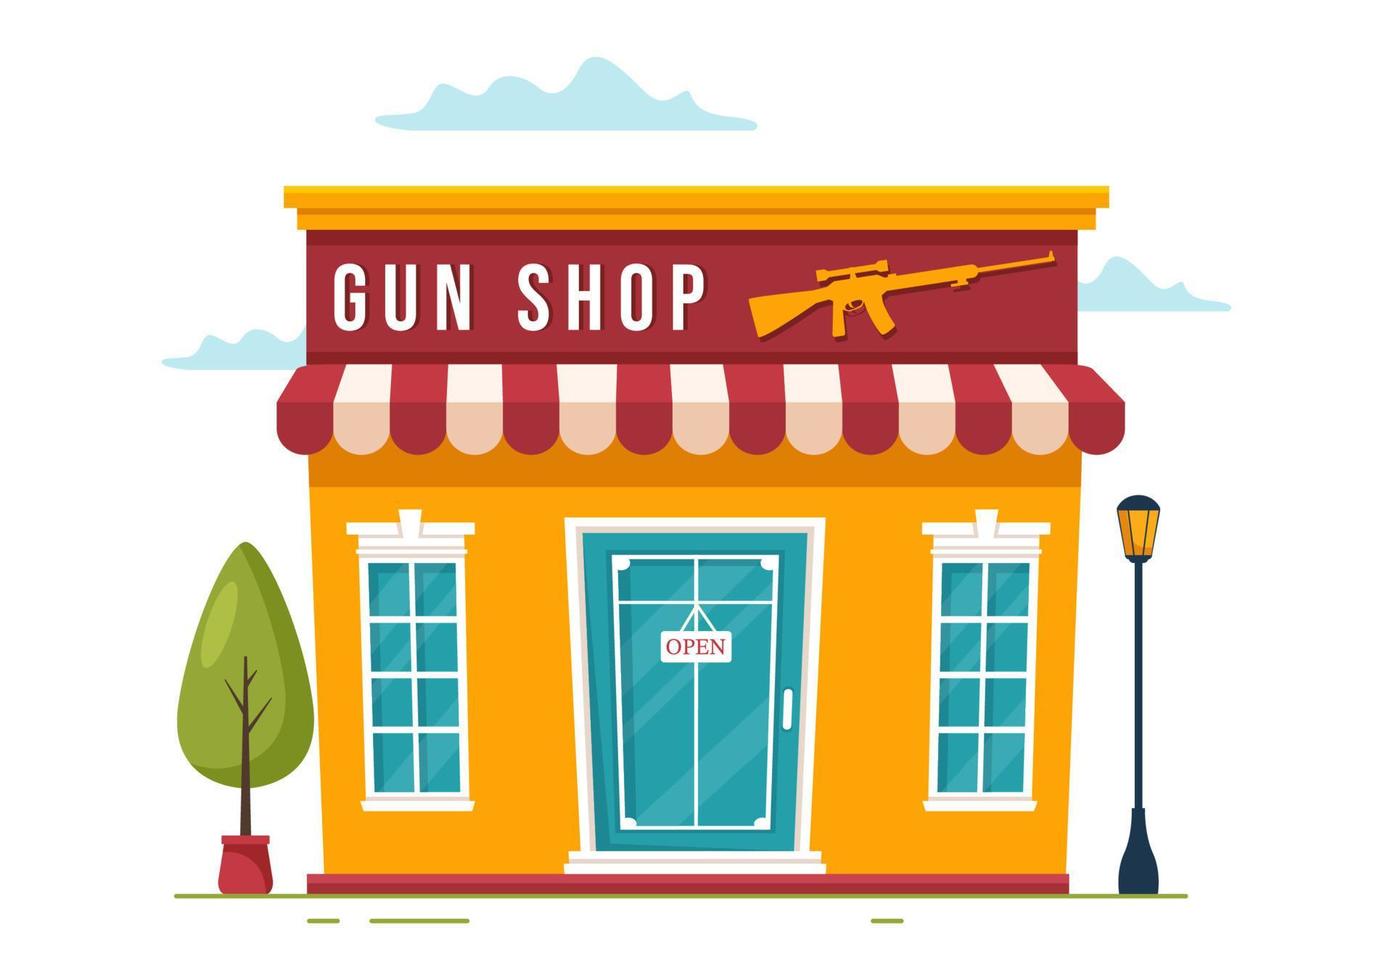 tienda de armas o caza con rifle, bala, arma y equipo de caza en ilustración de plantillas dibujadas a mano de dibujos animados de estilo plano vector